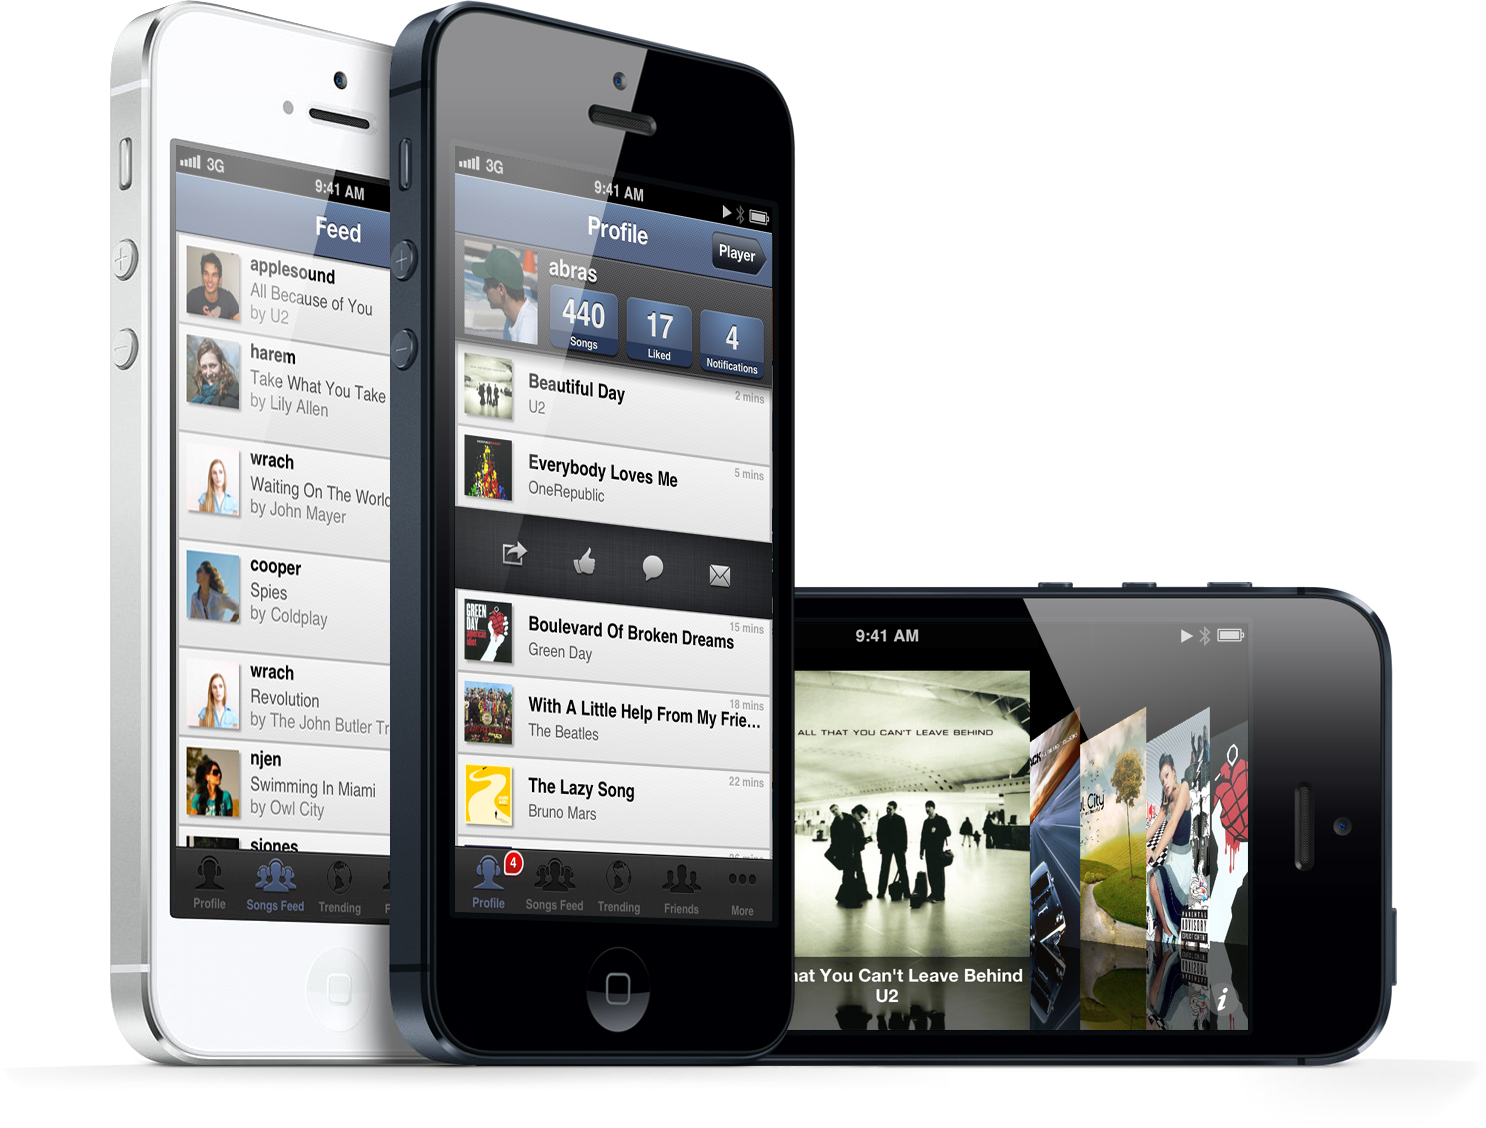 SoundShare - iPhones